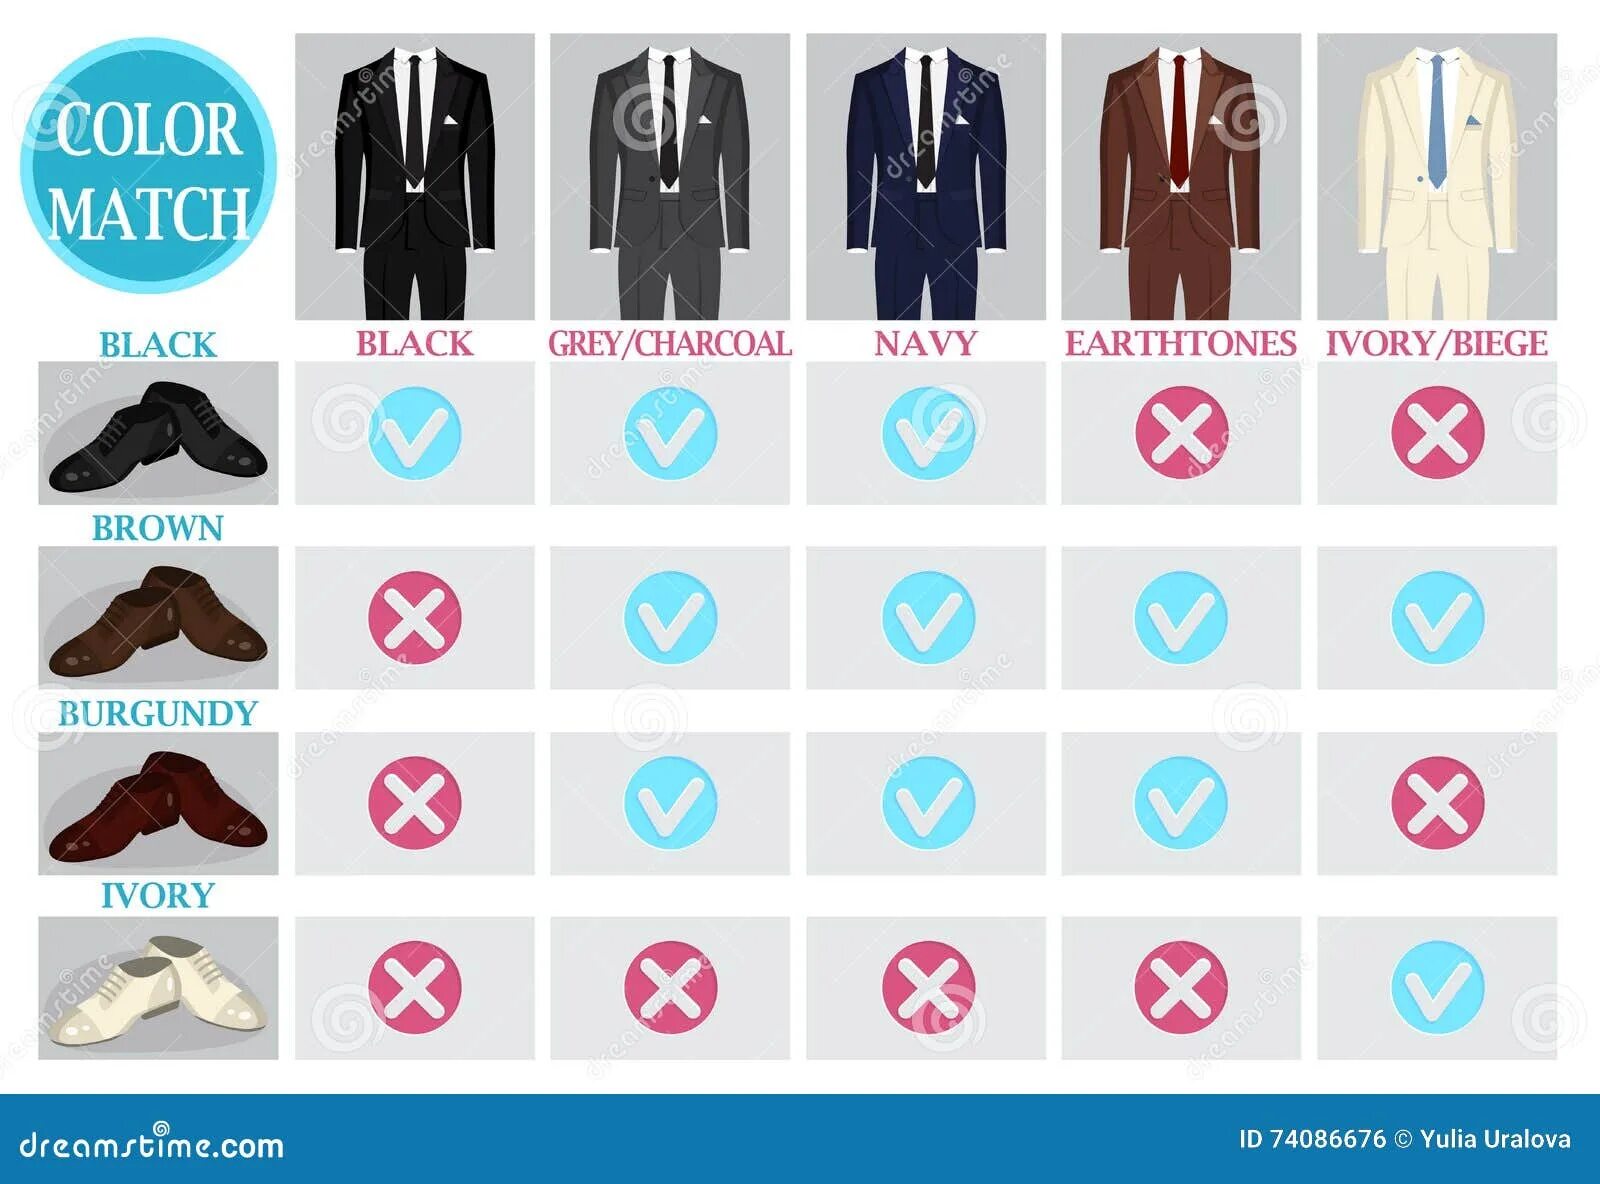 Match guide. Вектор костюм цвета. Палитра дресс кода. Палитра дресс кода на свадьбу. Инфографика для мужских курток.